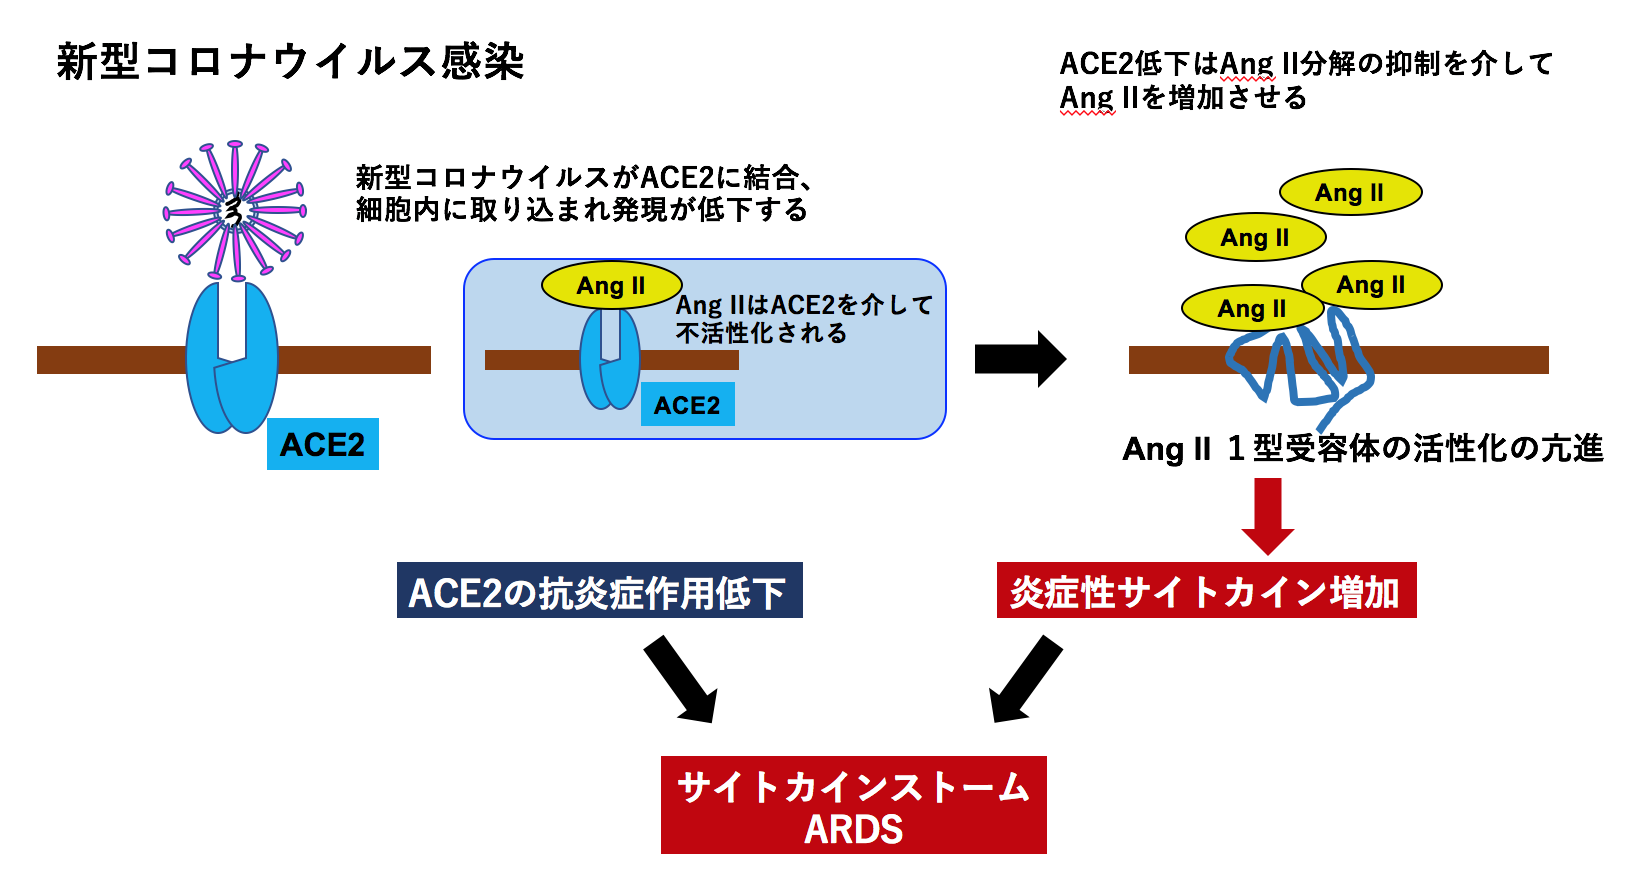 図1：新型コロナウイルス感染症の病態とレニン-アンジオテンシン系、ACE2との関係